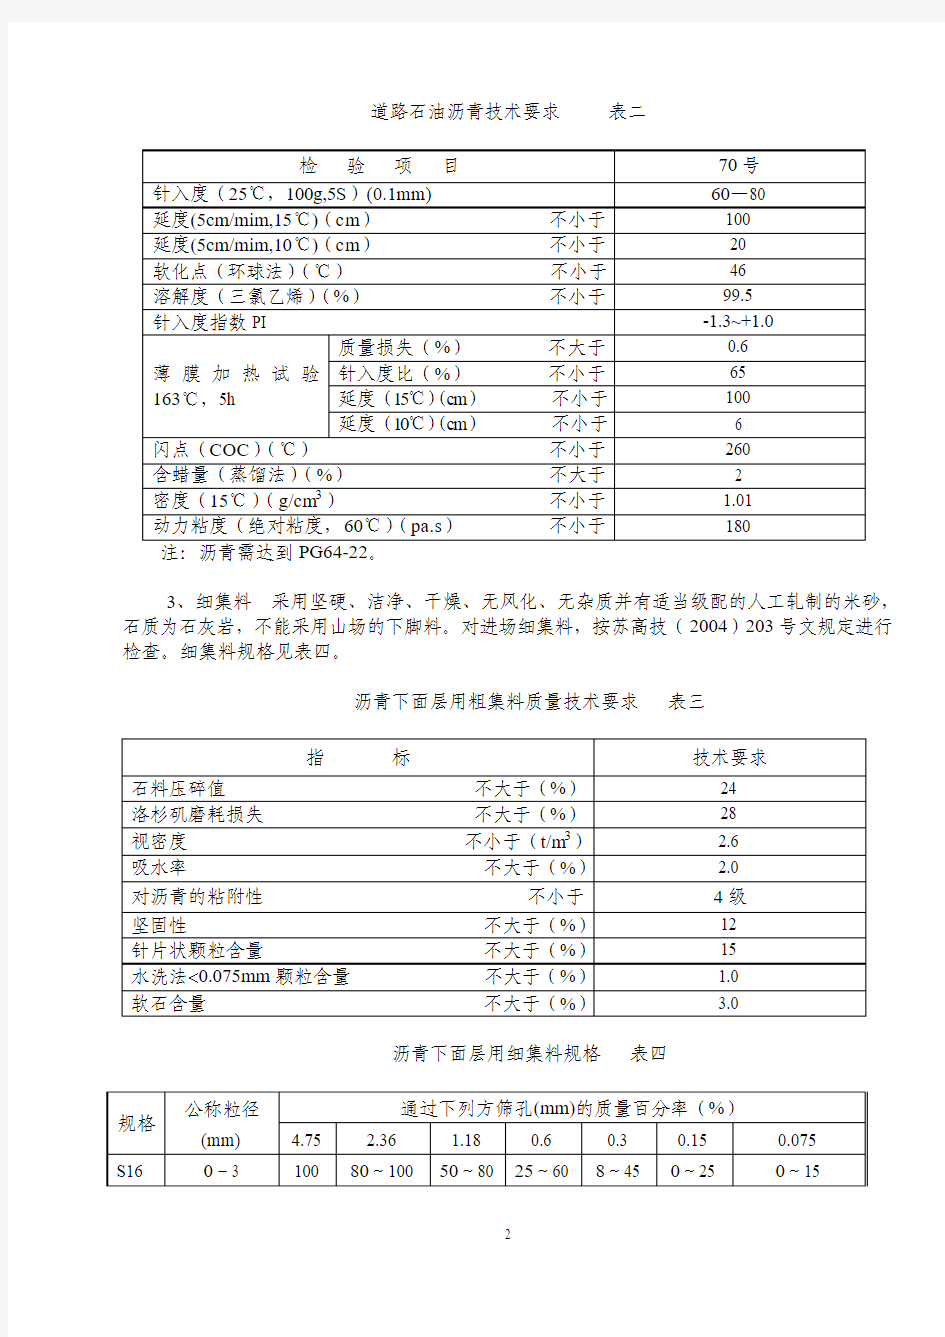 江苏省高速公路沥青路面下面层(道路石油沥青,AC-25S)施工指导意见(修订版)